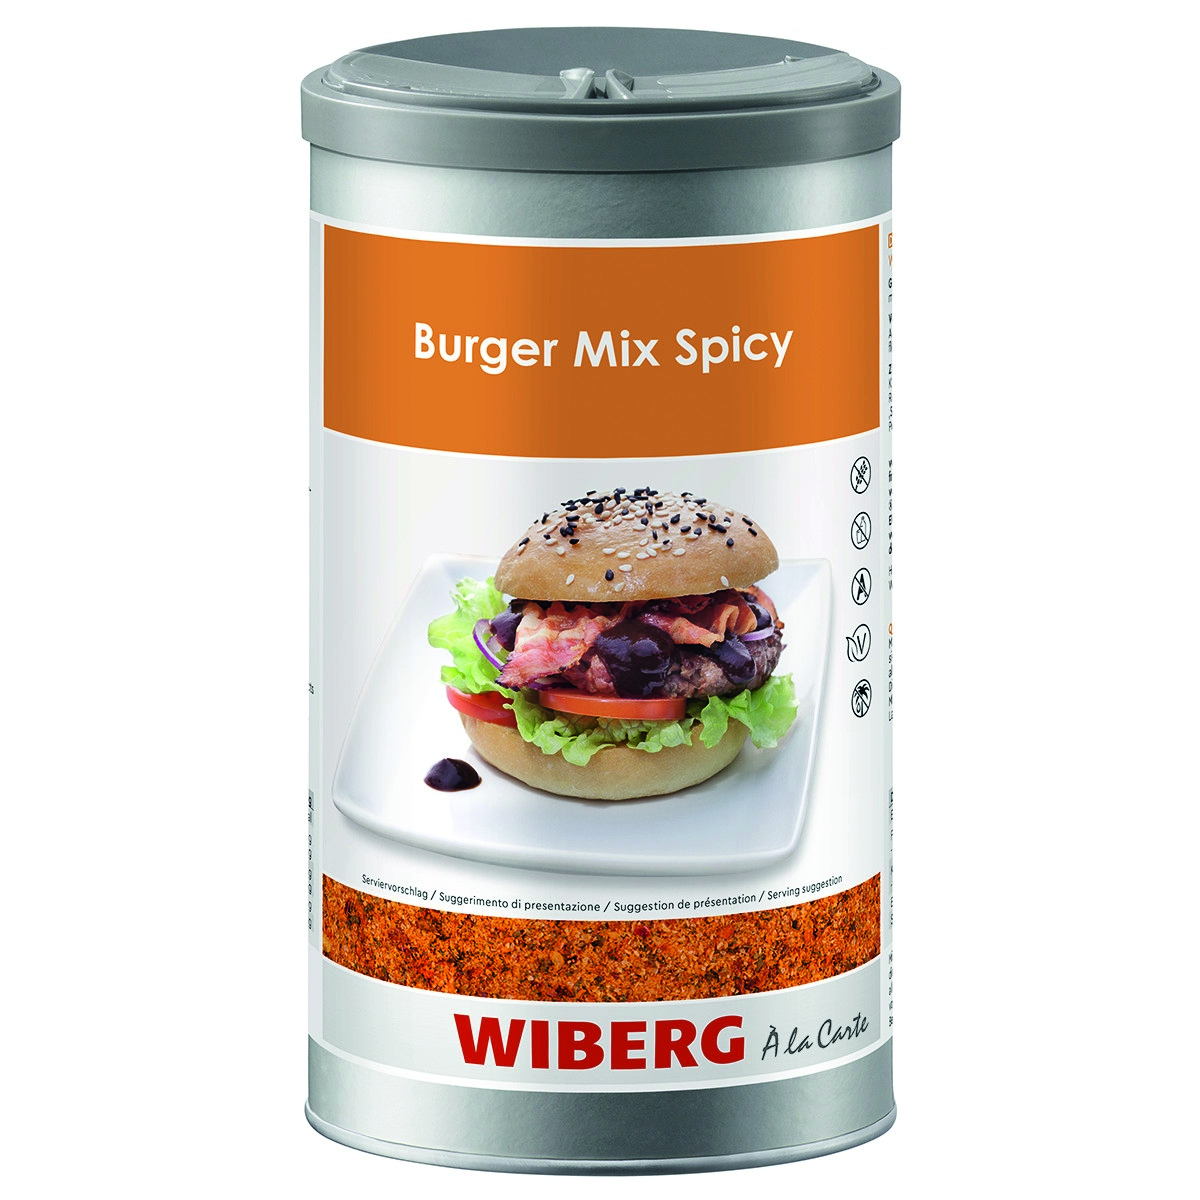 WIBERG Burger Mix Spicy